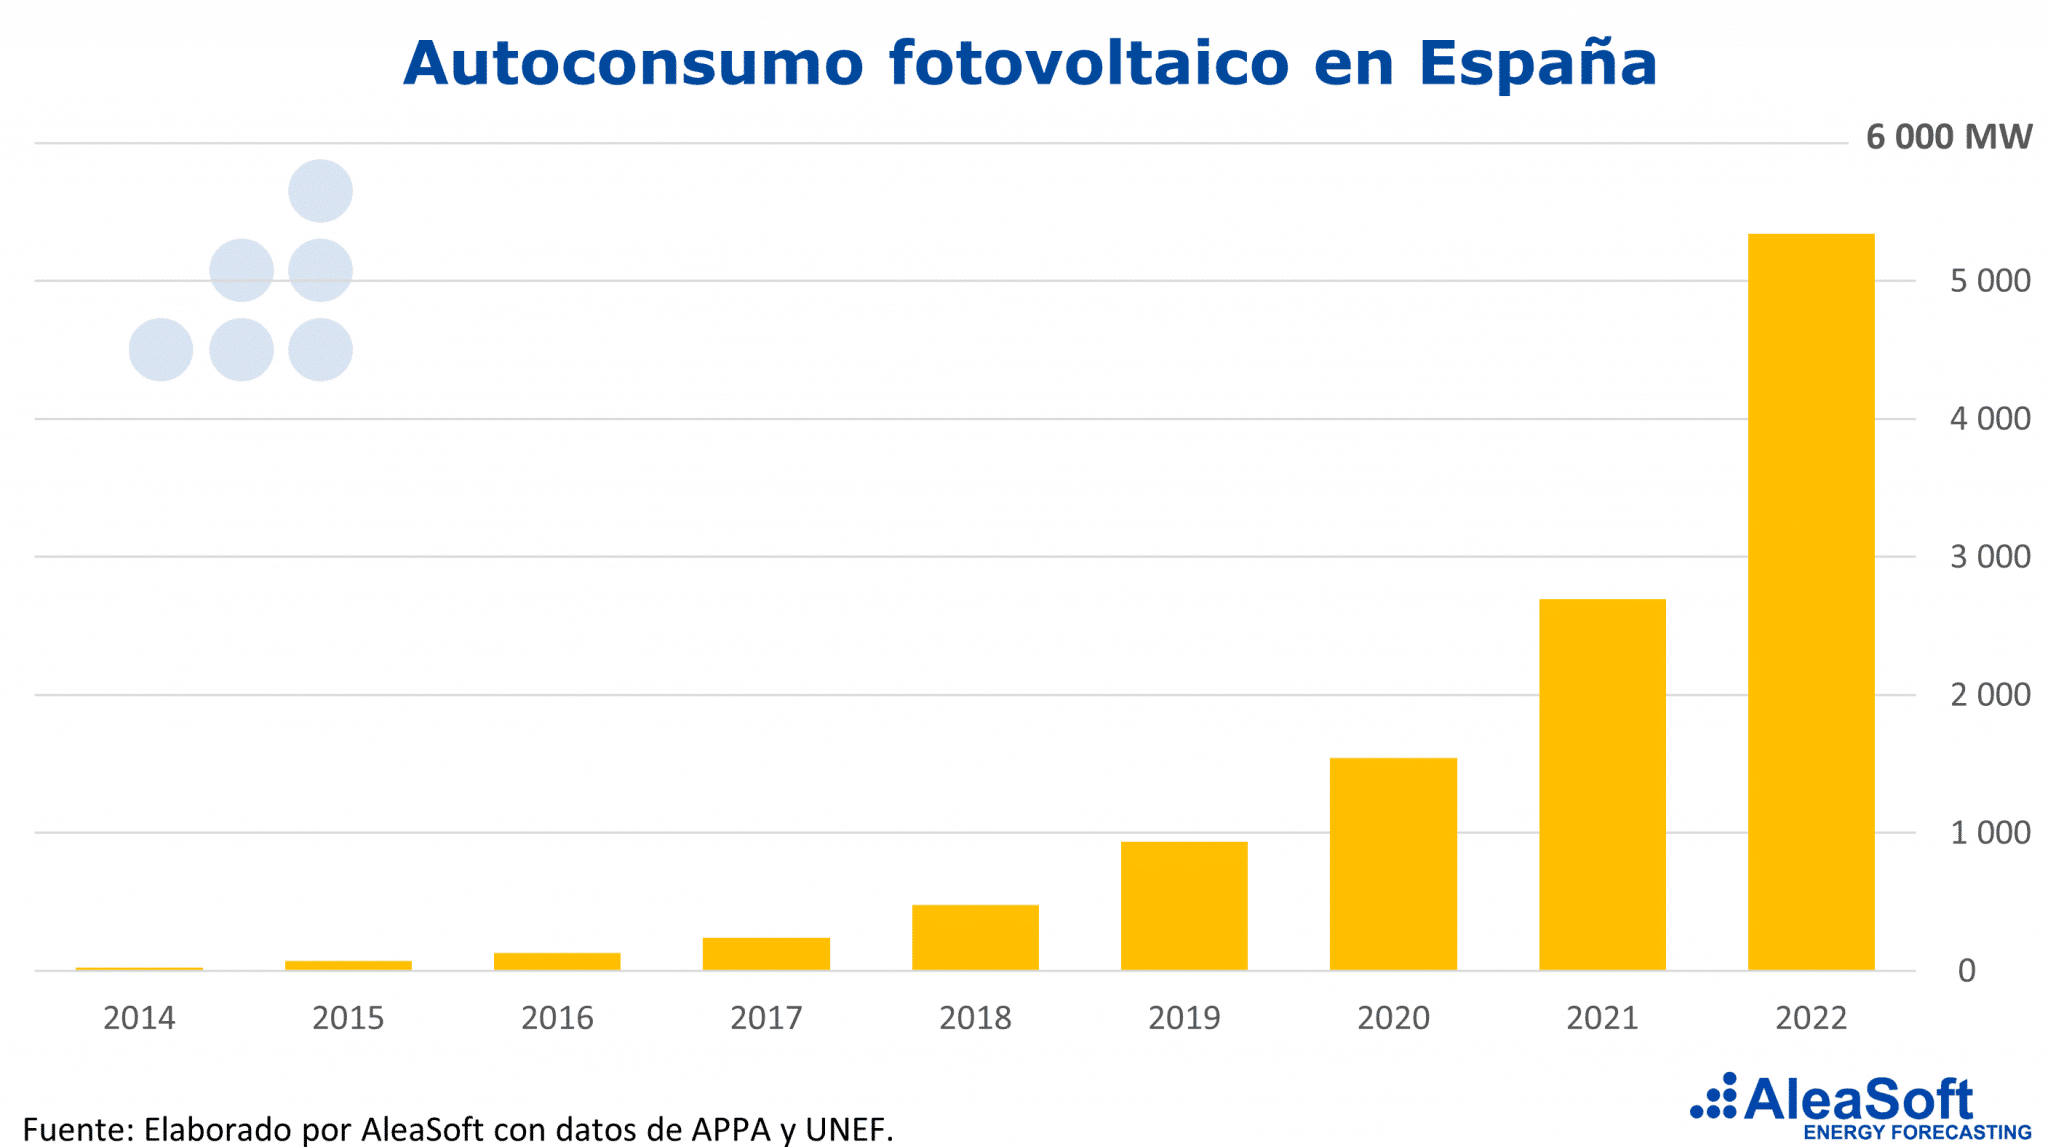 AleaSoft - Autoconsumo fotovoltaico Espana